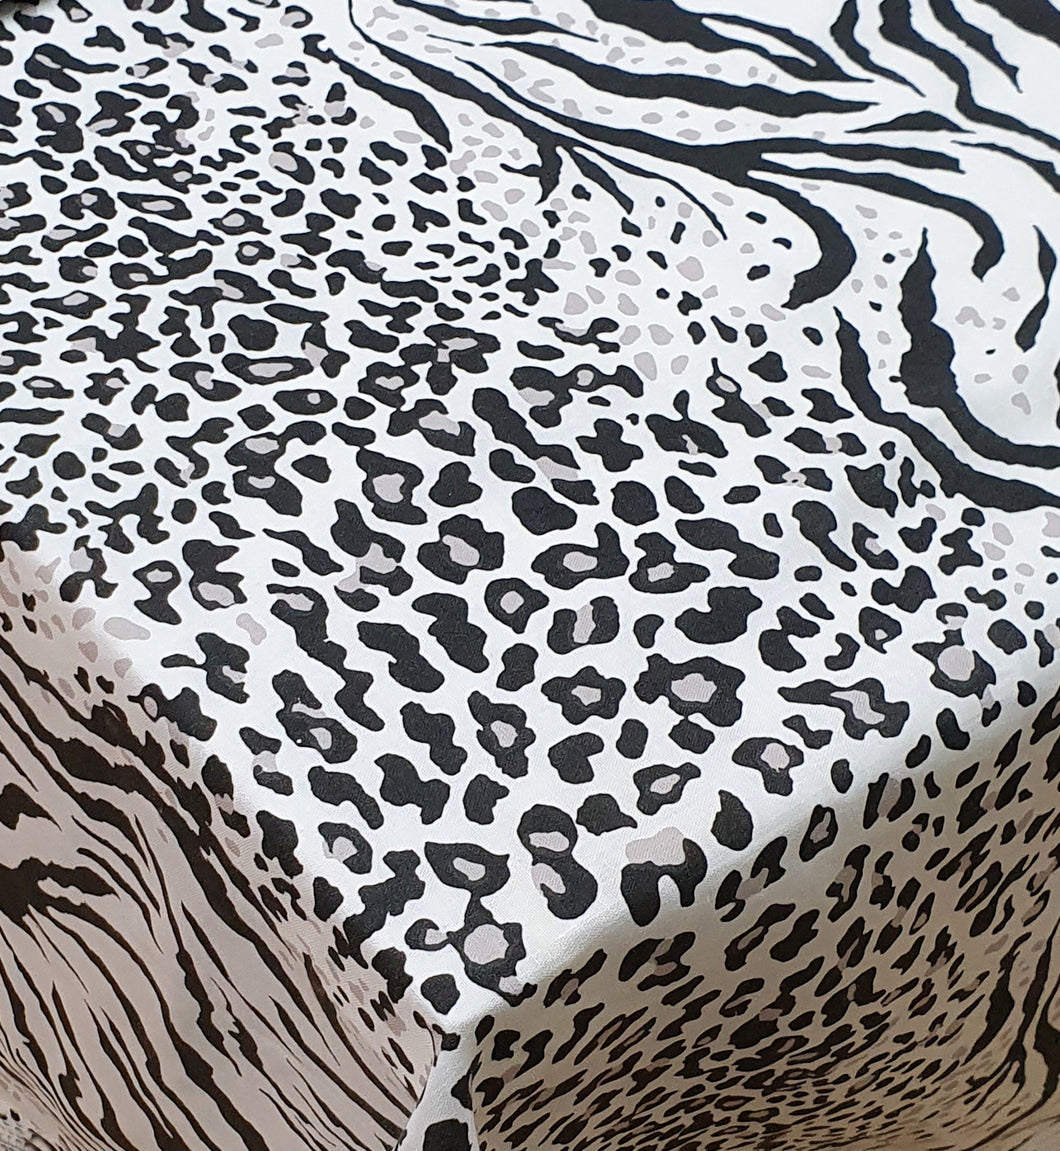 Fitted Sheet Kalahari - Animal Leopard Tiger Print Black White